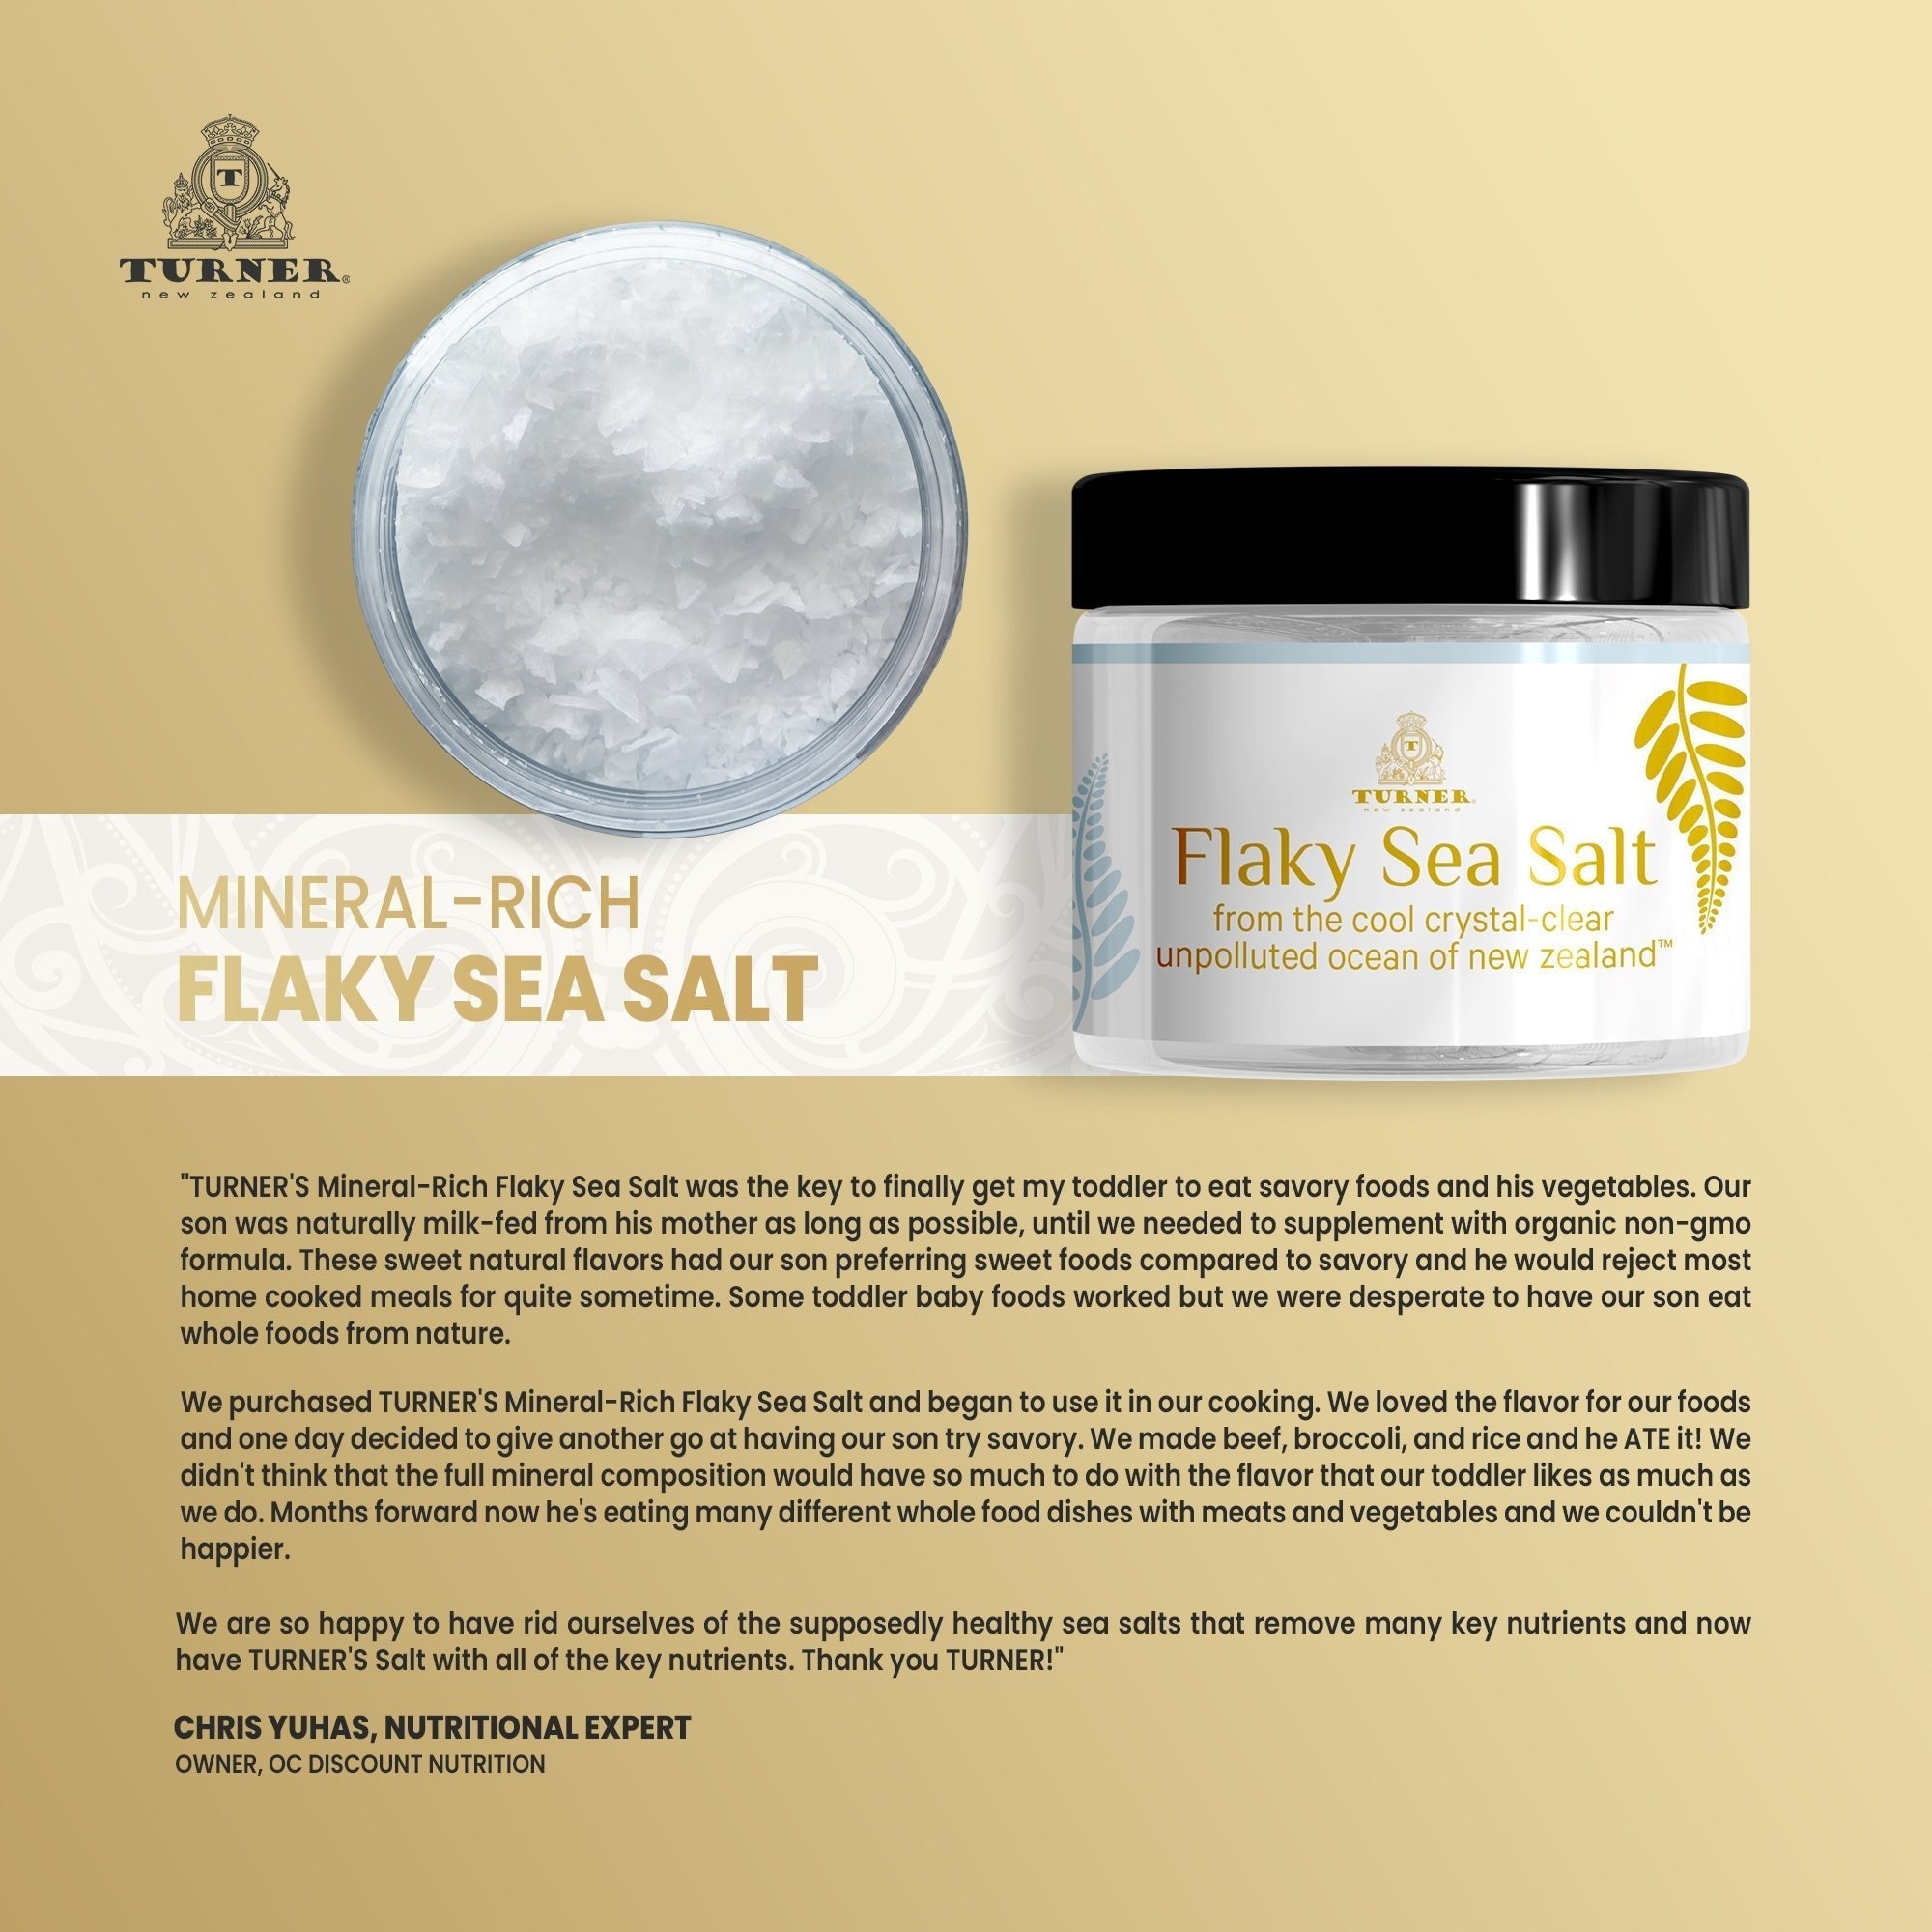 Mineral-Rich Flaky Sea Salt Jar, TURNER New Zealand, 